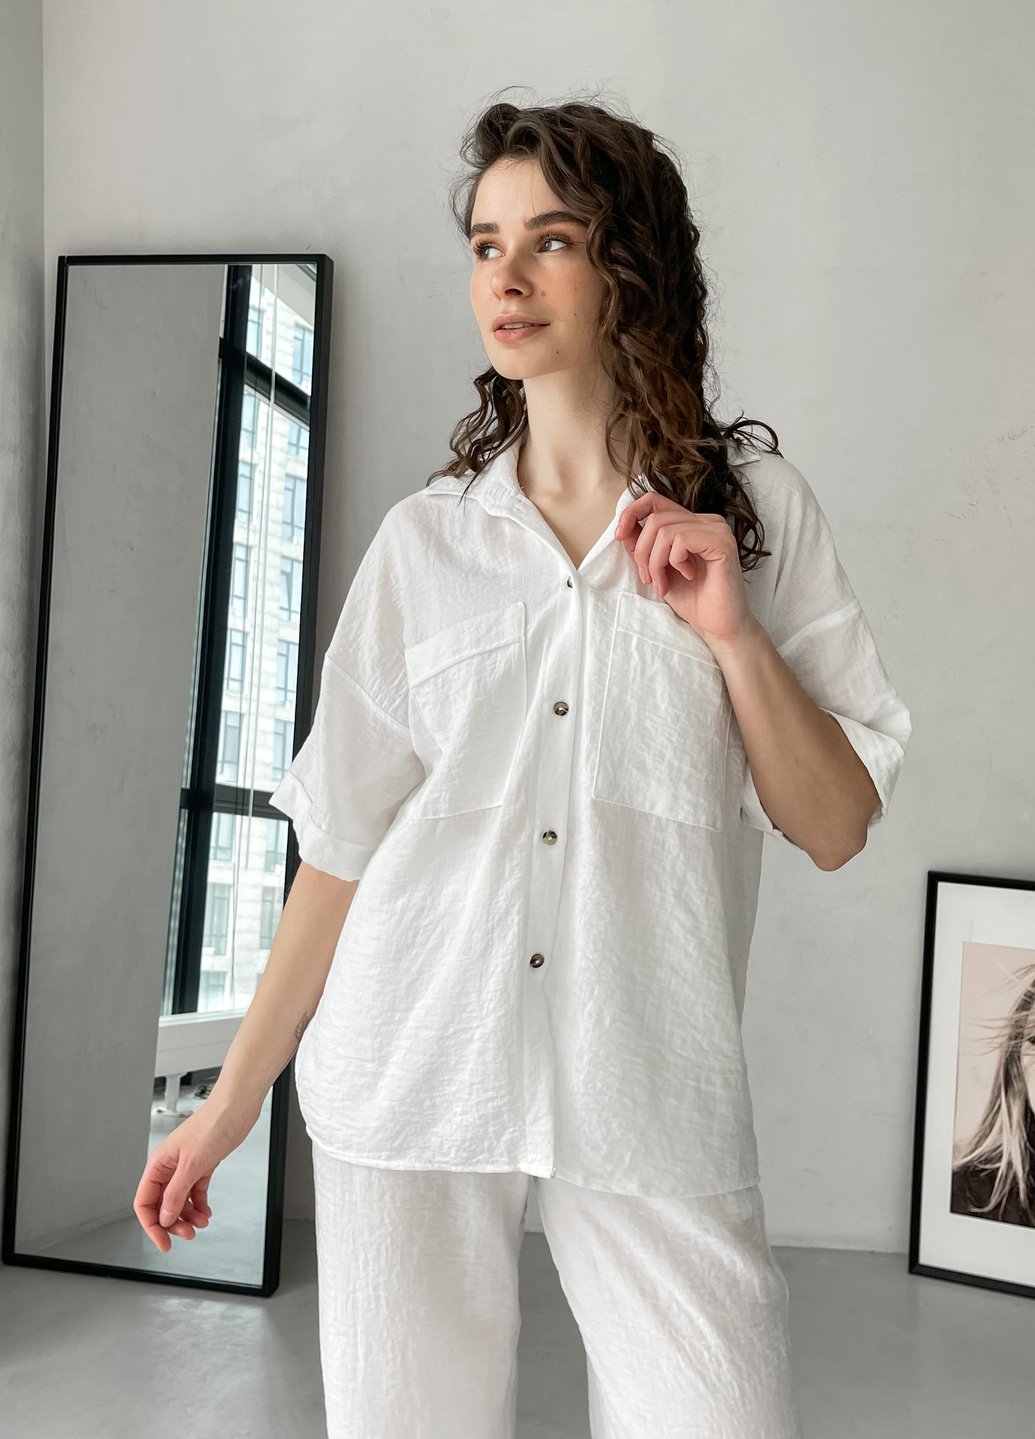 Купить Женская льняная рубашка с коротким рукавом белая Merlini Фриули 200000142, размер 42-44 в интернет-магазине